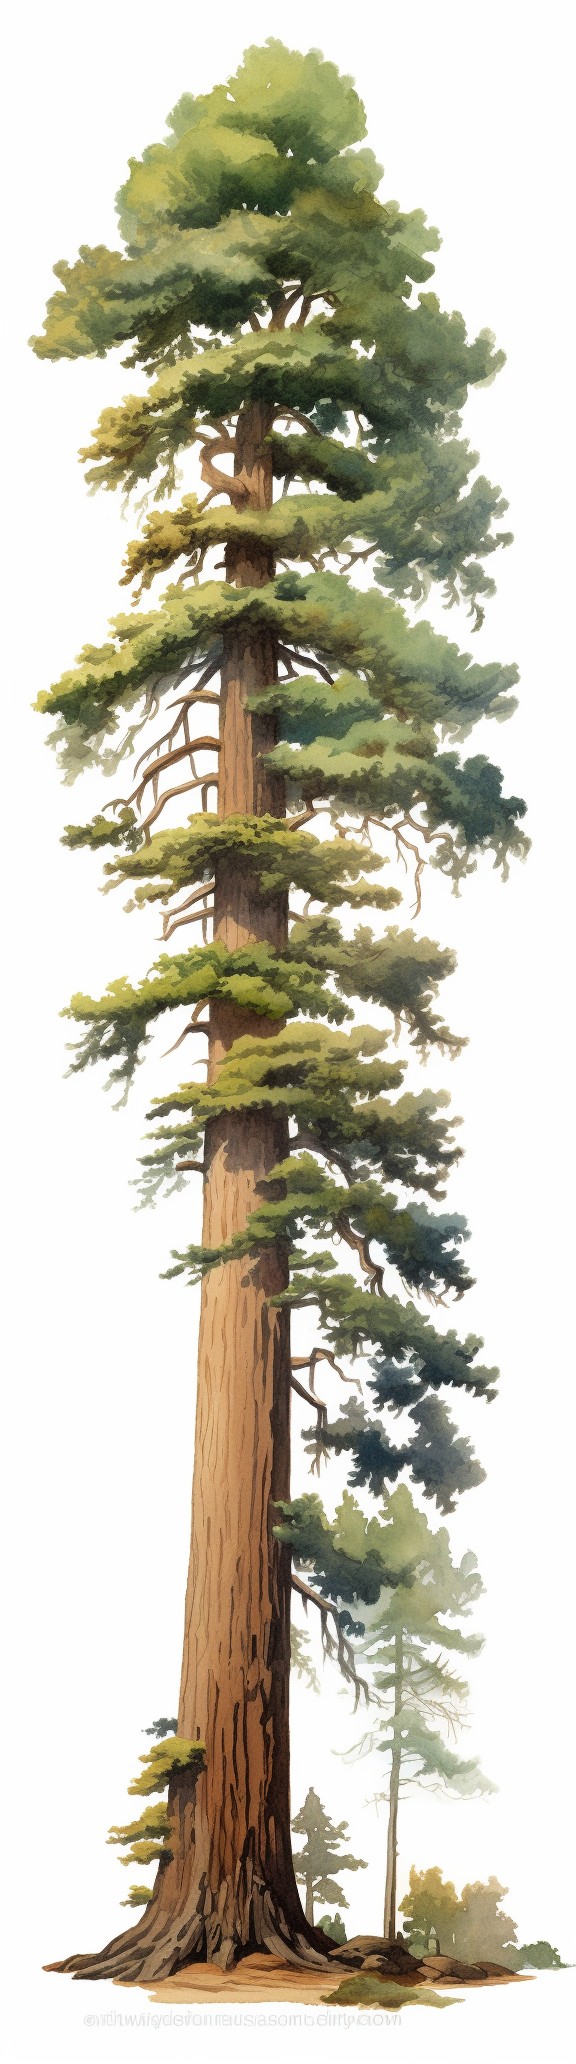 Giant Sequoia - coniferous tree